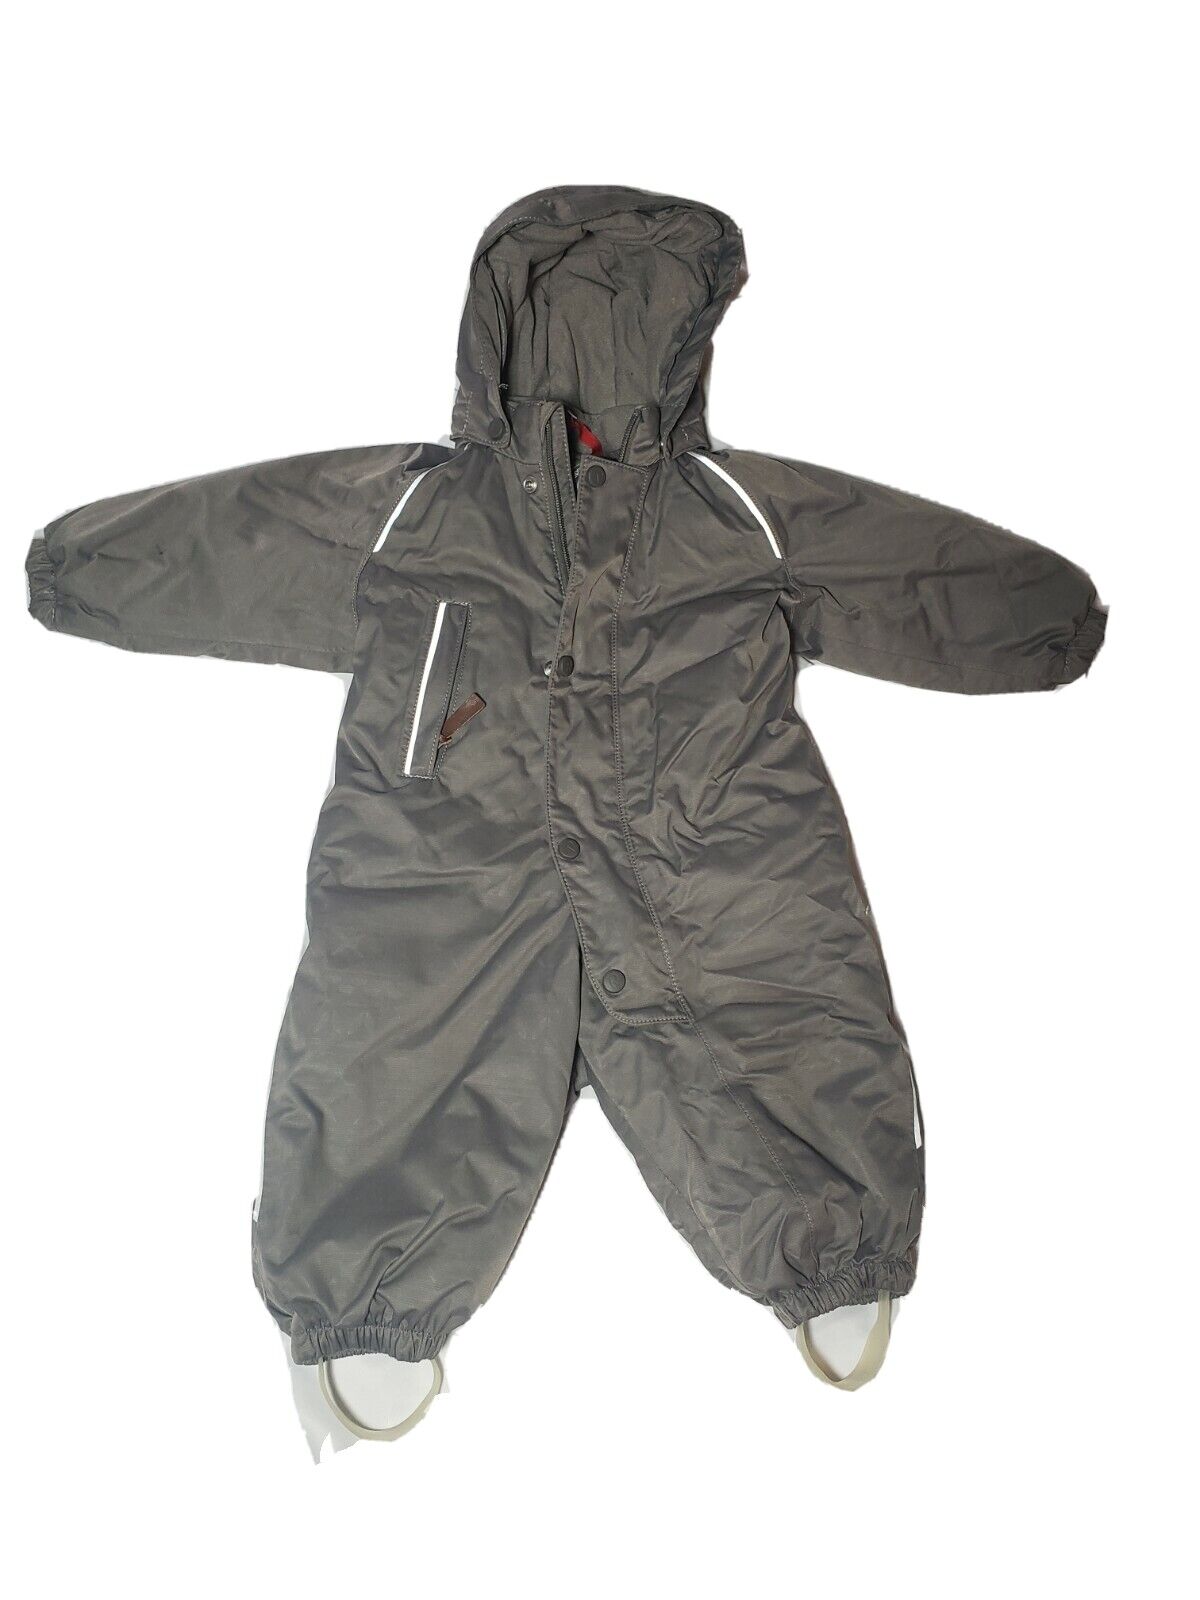 bønner Station følelsesmæssig REIMA Kids Puhuri Reimatec Winter Overall Jumpsuit Grey Size 74 | eBay